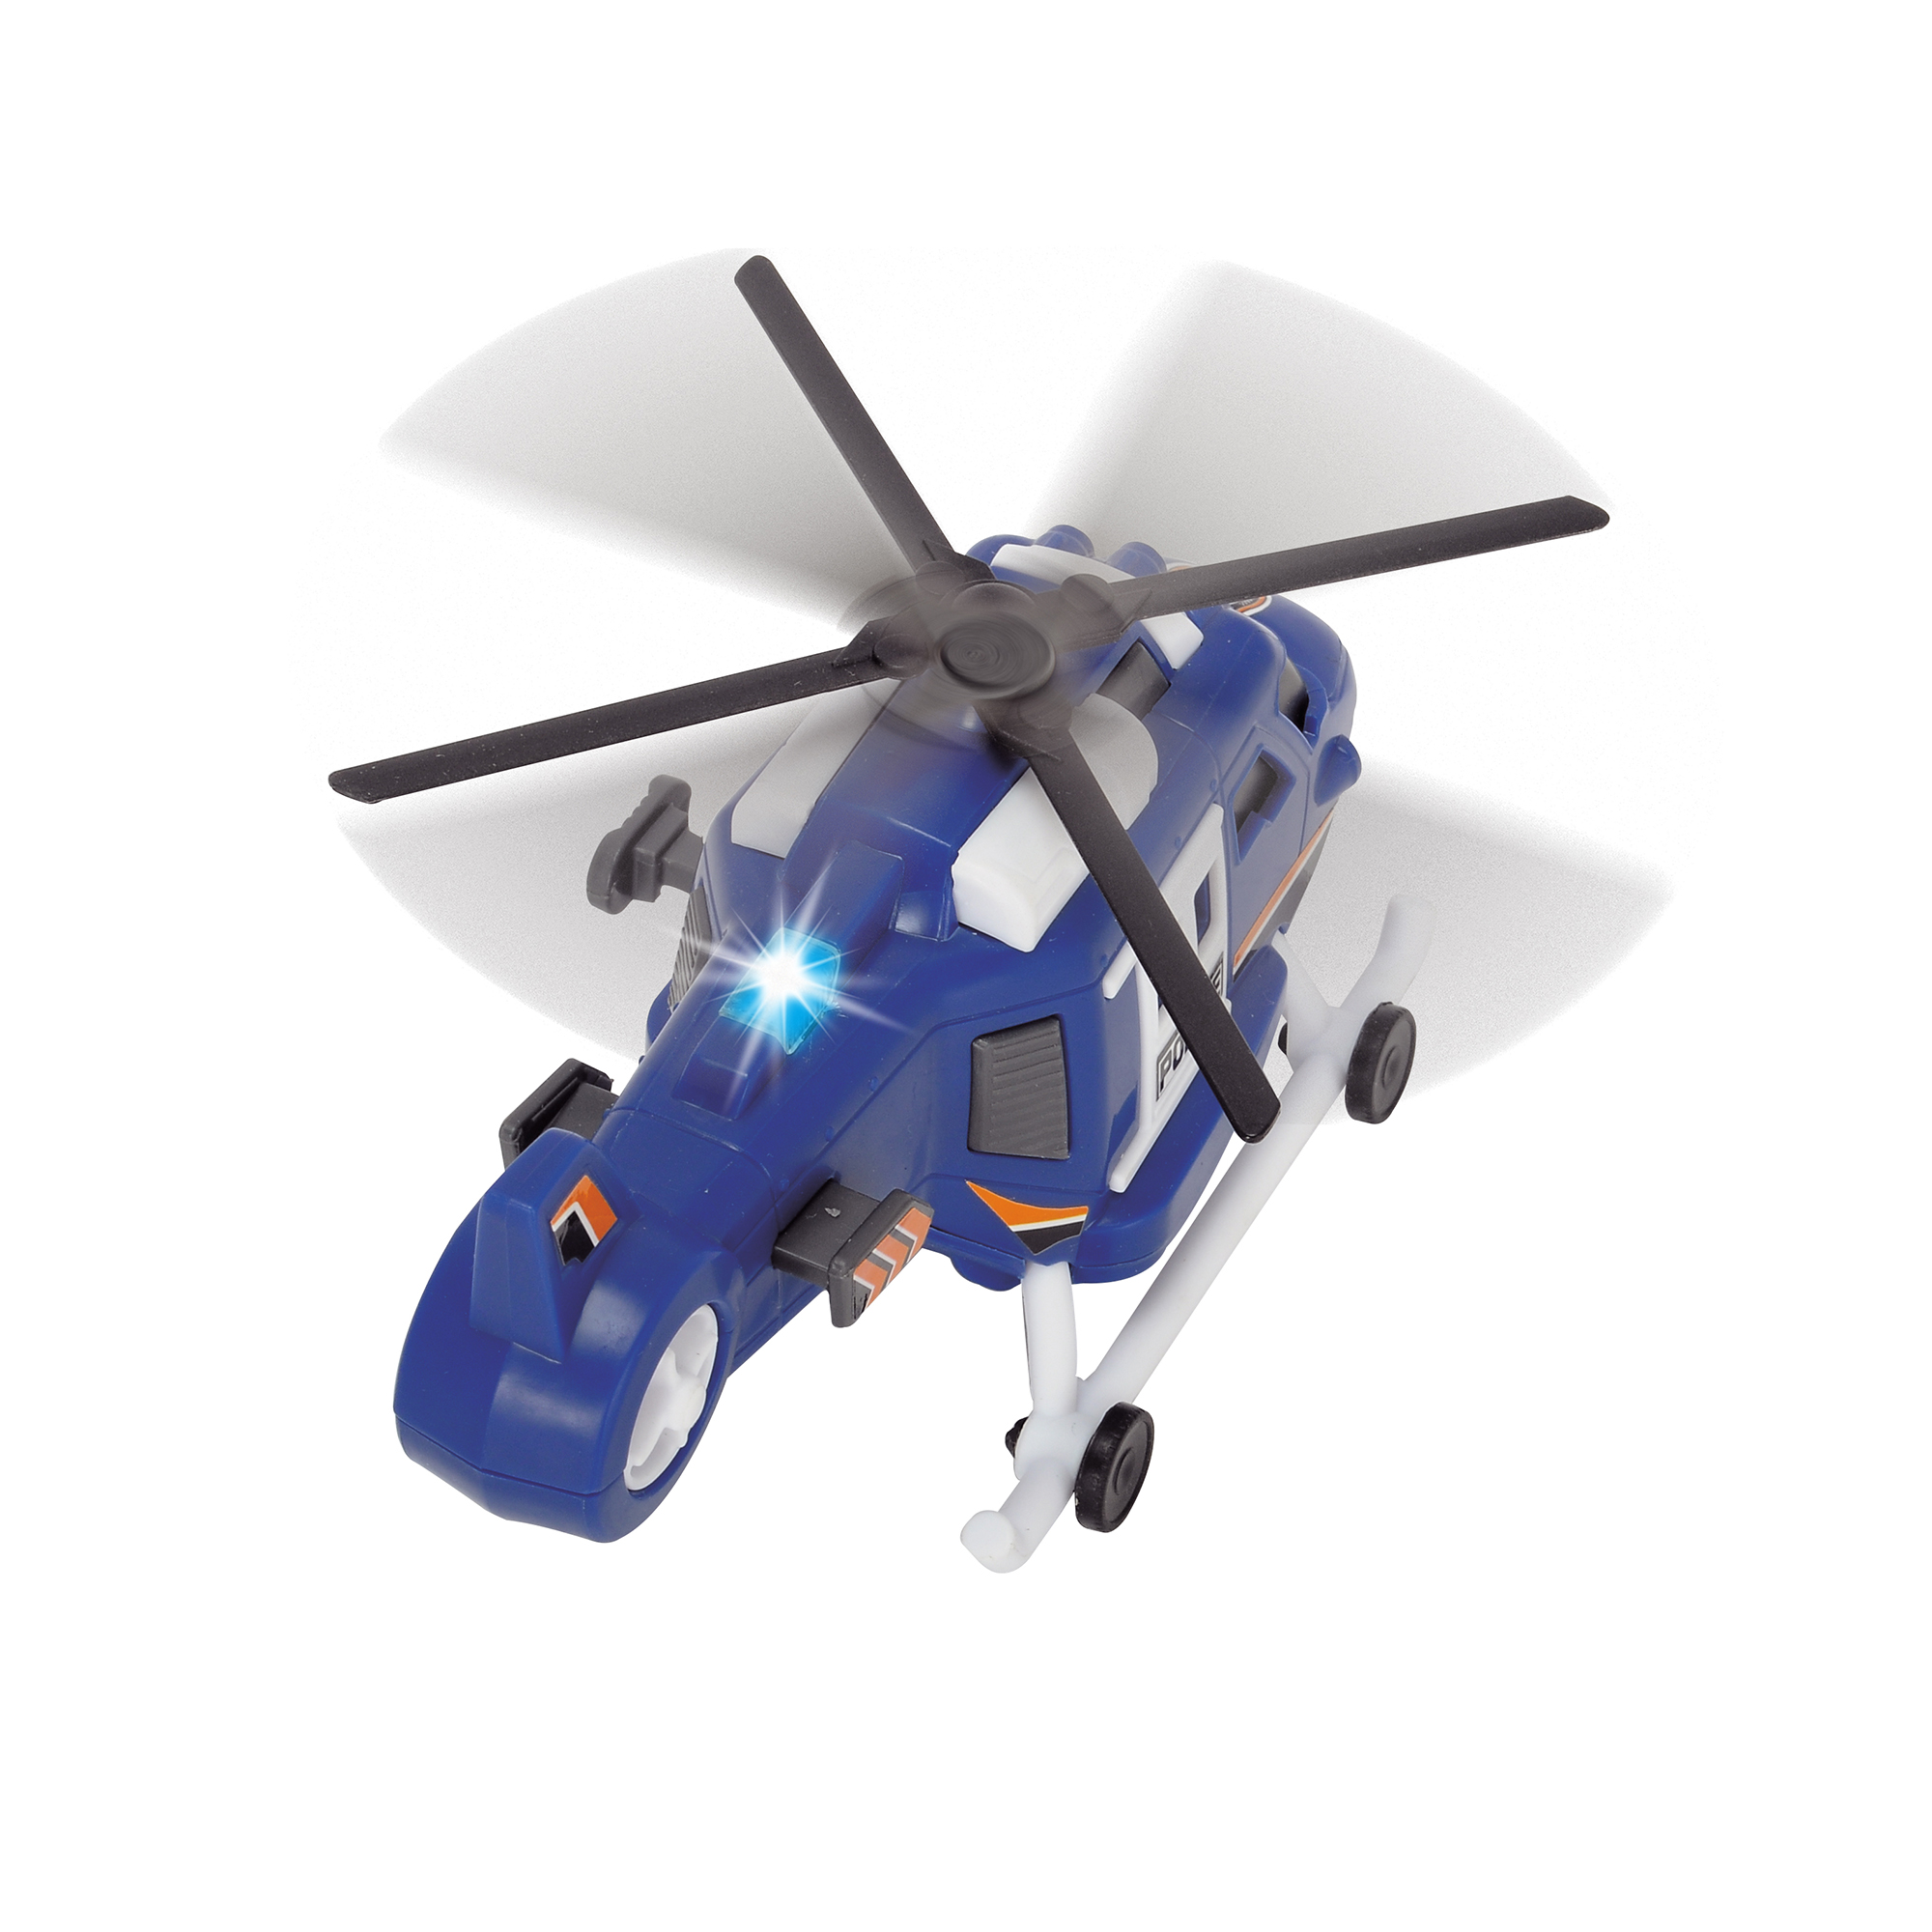 Đồ Chơi Trực Thăng DICKIE TOYS Helicopter 203302016 - Đồ Chơi Đức Chính Hãng (18 cm)